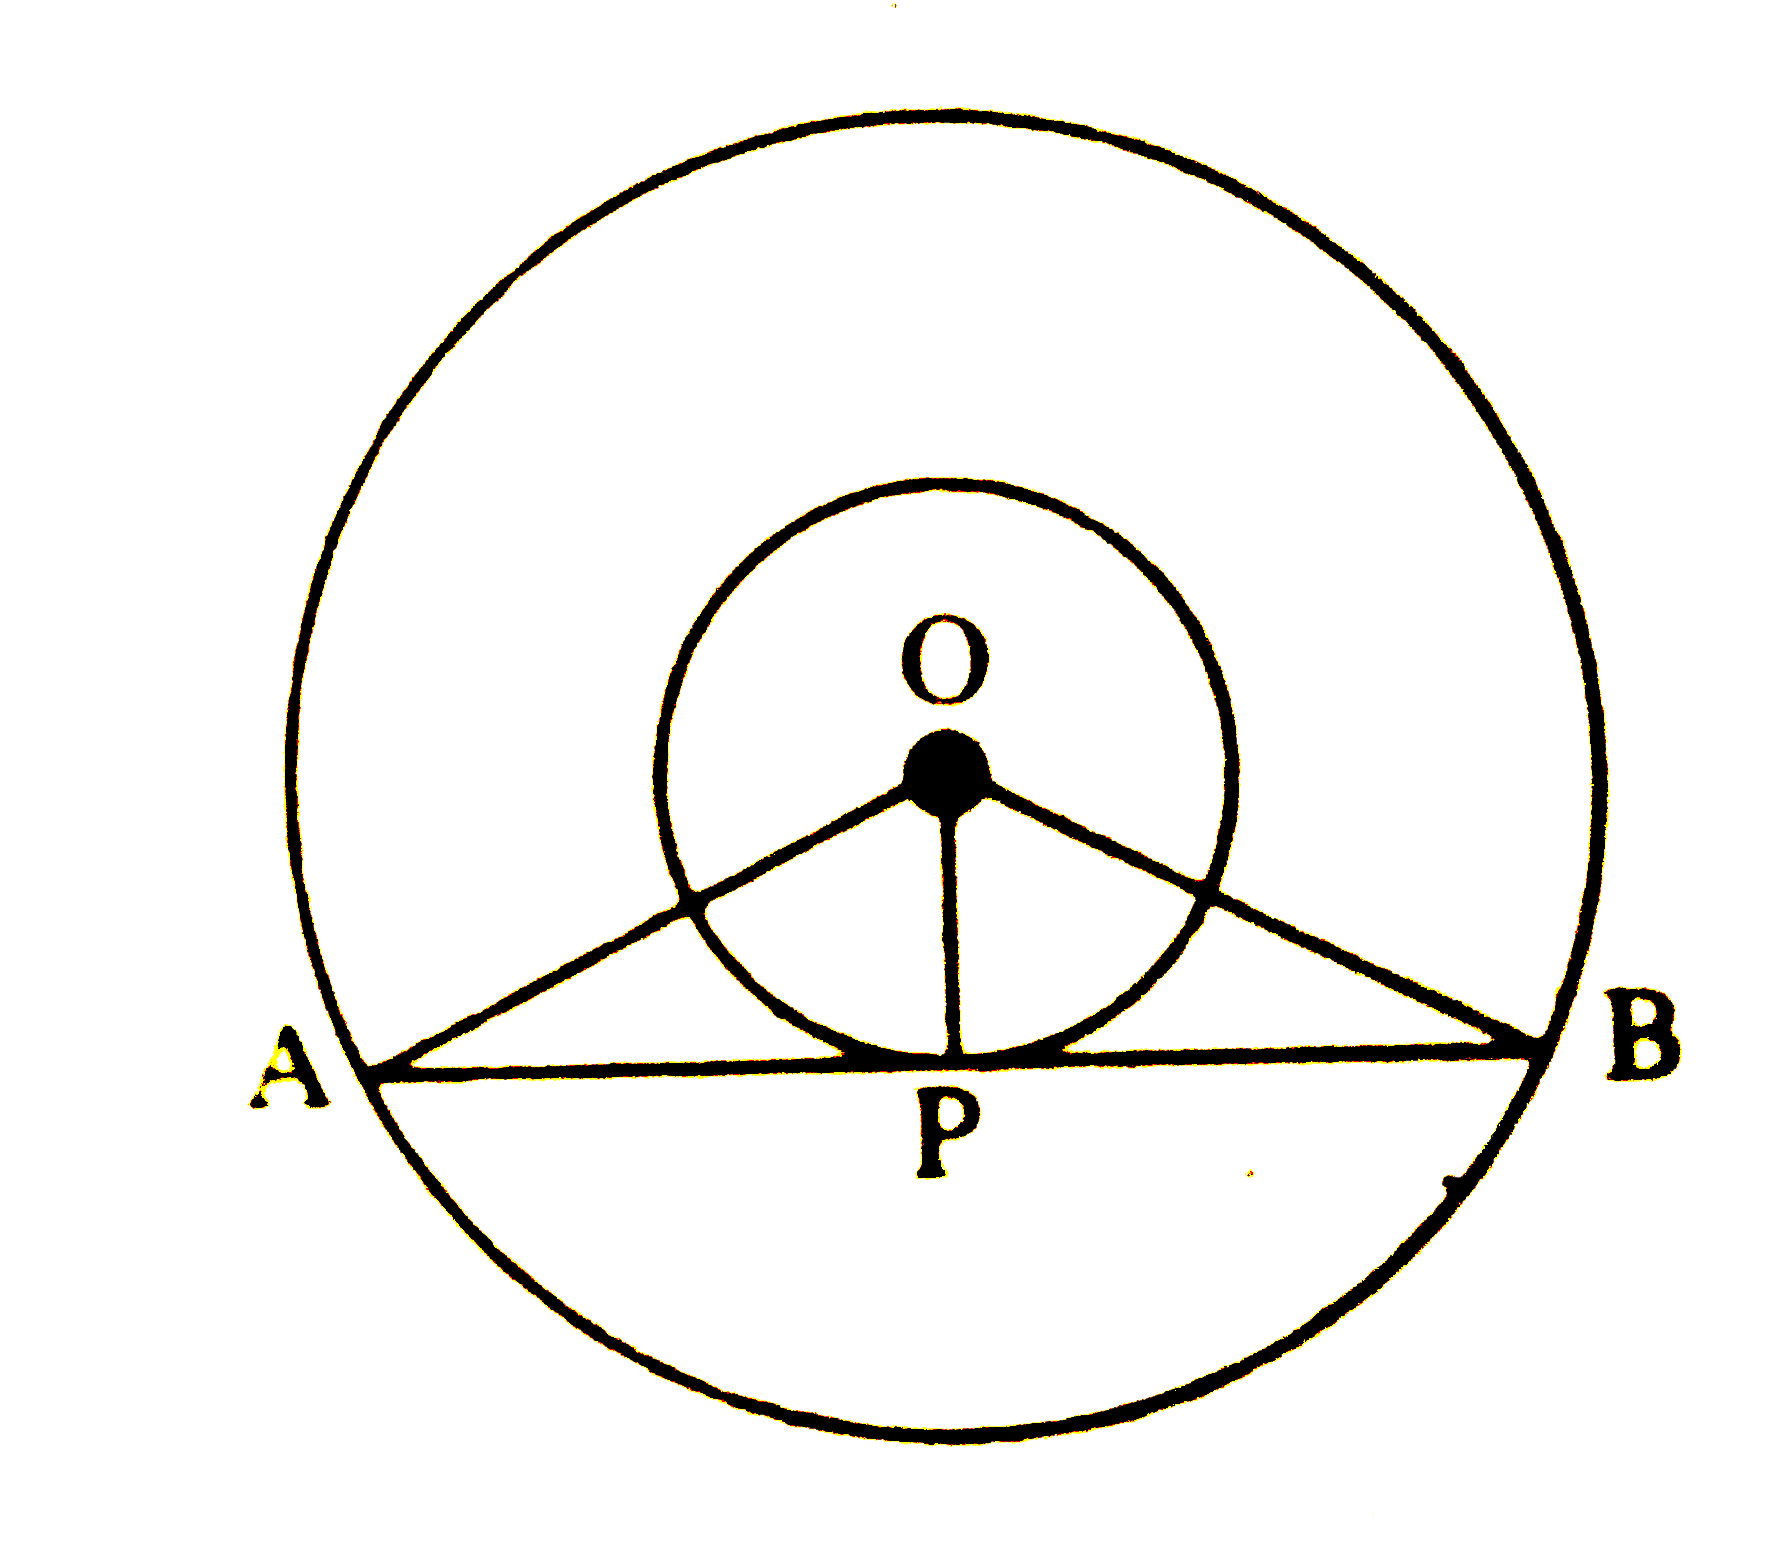 चित्र में, 3 सेमी और 5 सेमी त्रिज्या के दो संकेन्द्रित वृत्त है। बाह्रा वृत्त की एक जीवा AB, जो अंतः वृत्त को बिन्दु P पर स्पर्श करती है, की लम्बाई होगी-